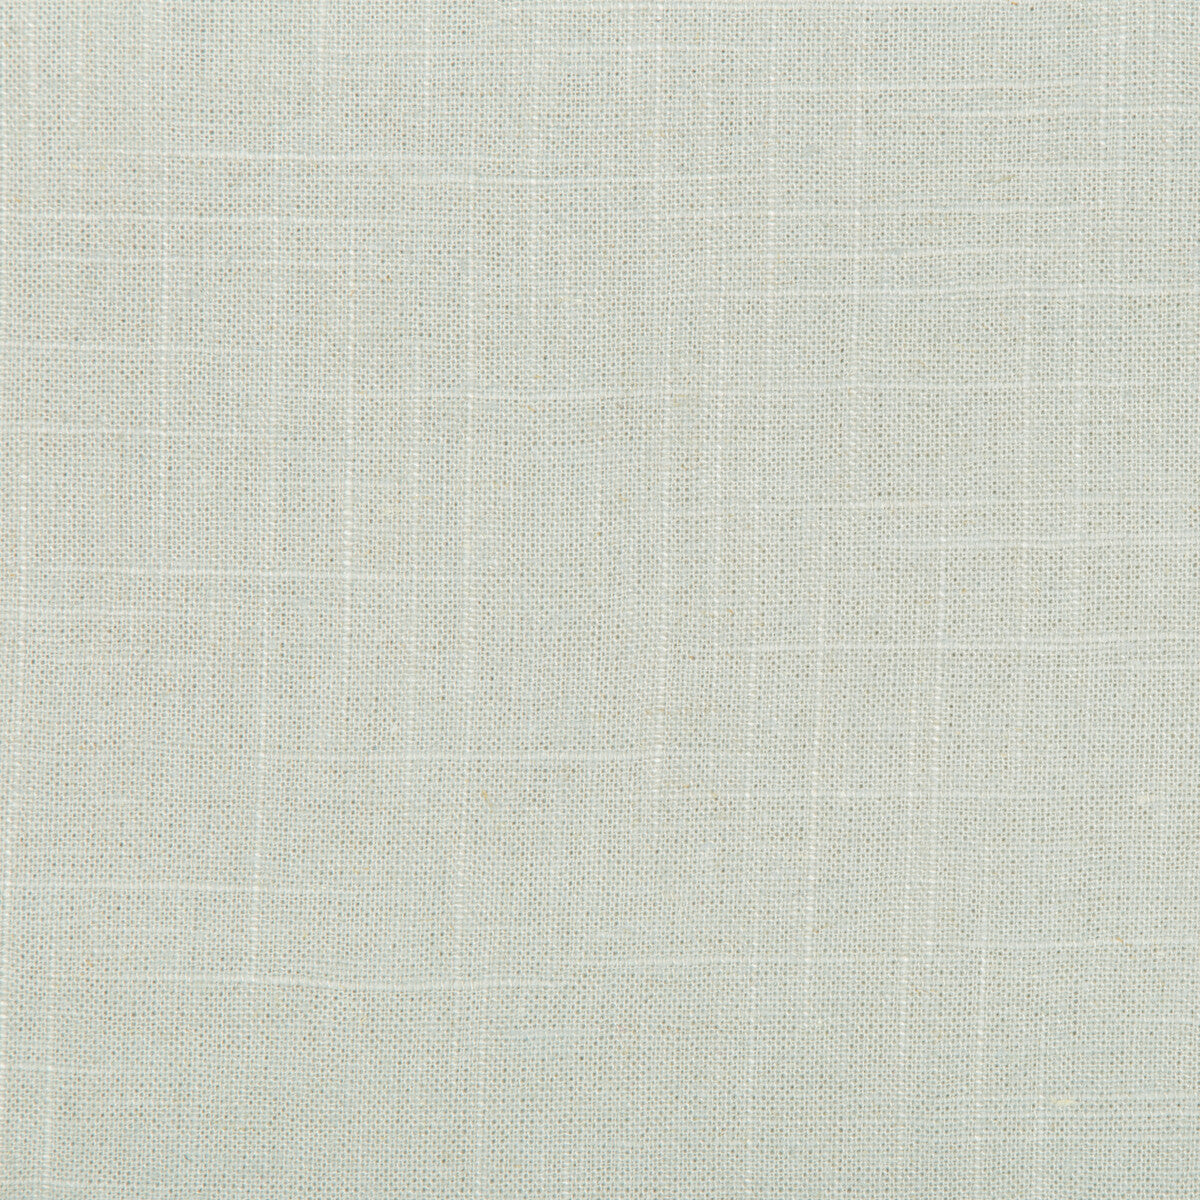 Kravet Basics fabric in 30808-1315 color - pattern 30808.1315.0 - by Kravet Basics